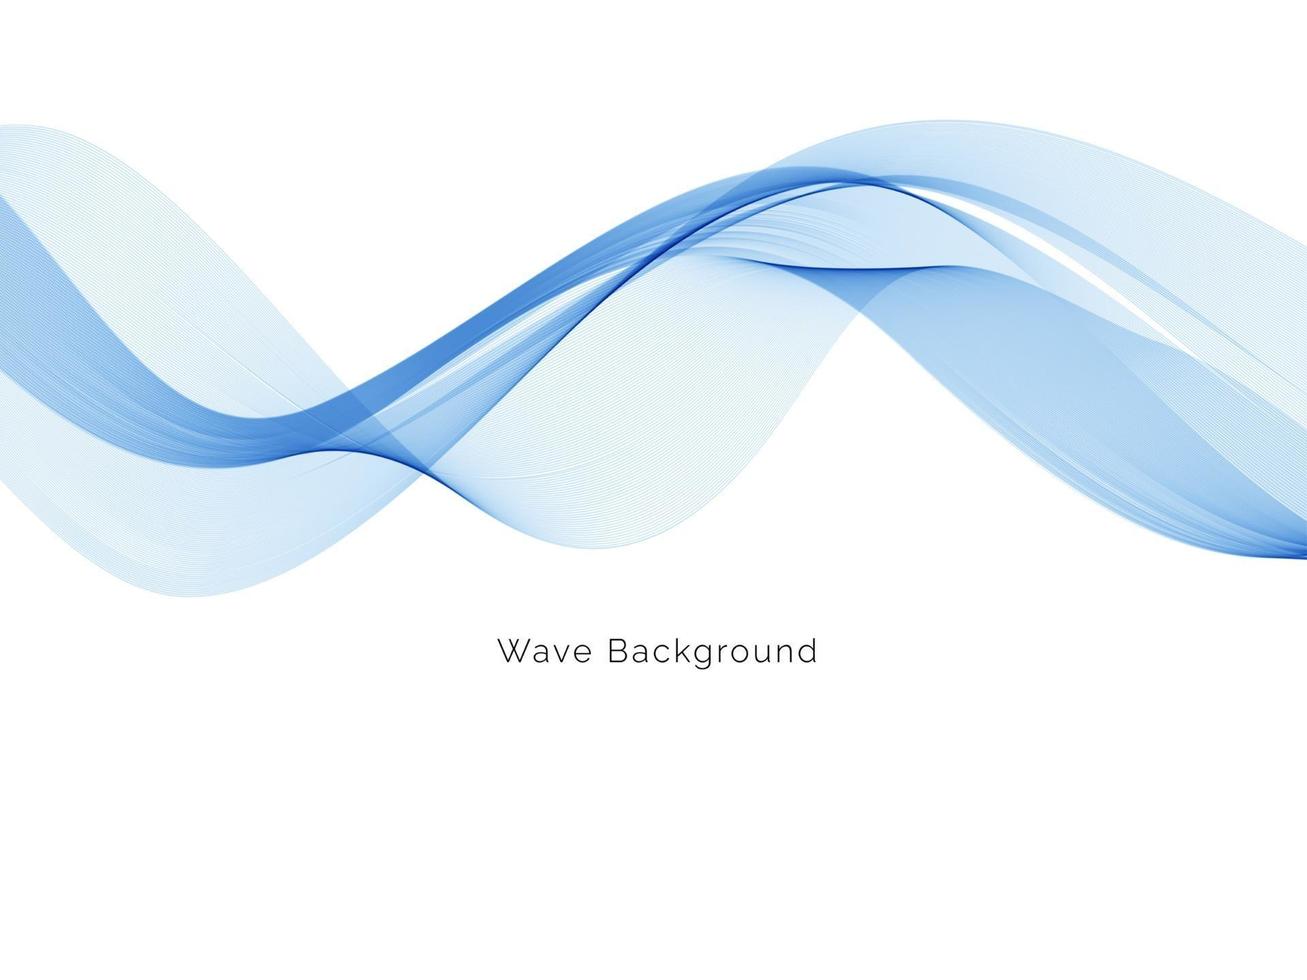 blå våg design affärsbakgrund vektor